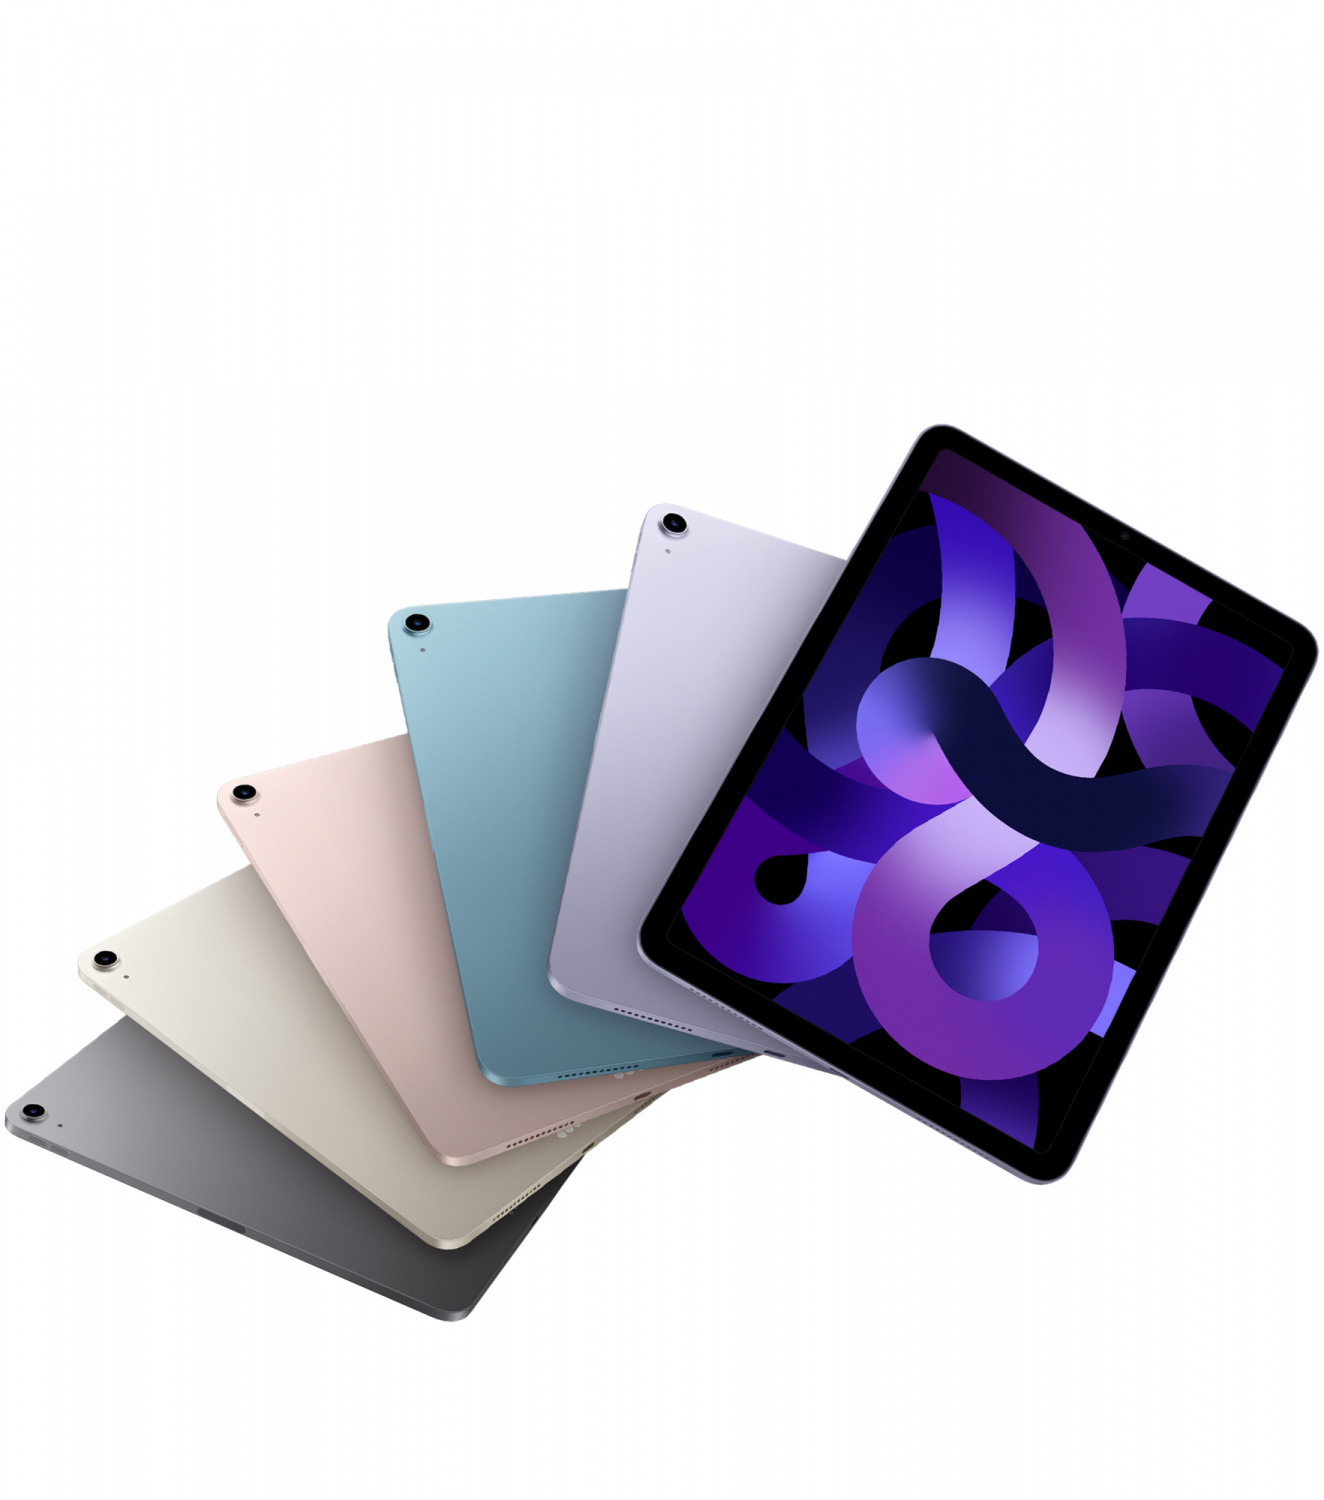 Купить планшет apple ipad air 5 поколение m1 2022  wi-fi 64 гб, blue Apple iPad Air в официальном магазине Apple, Samsung, Xiaomi. iPixel.ru Купить, заказ, кредит, рассрочка, отзывы,  характеристики, цена,  фотографии, в подарок.